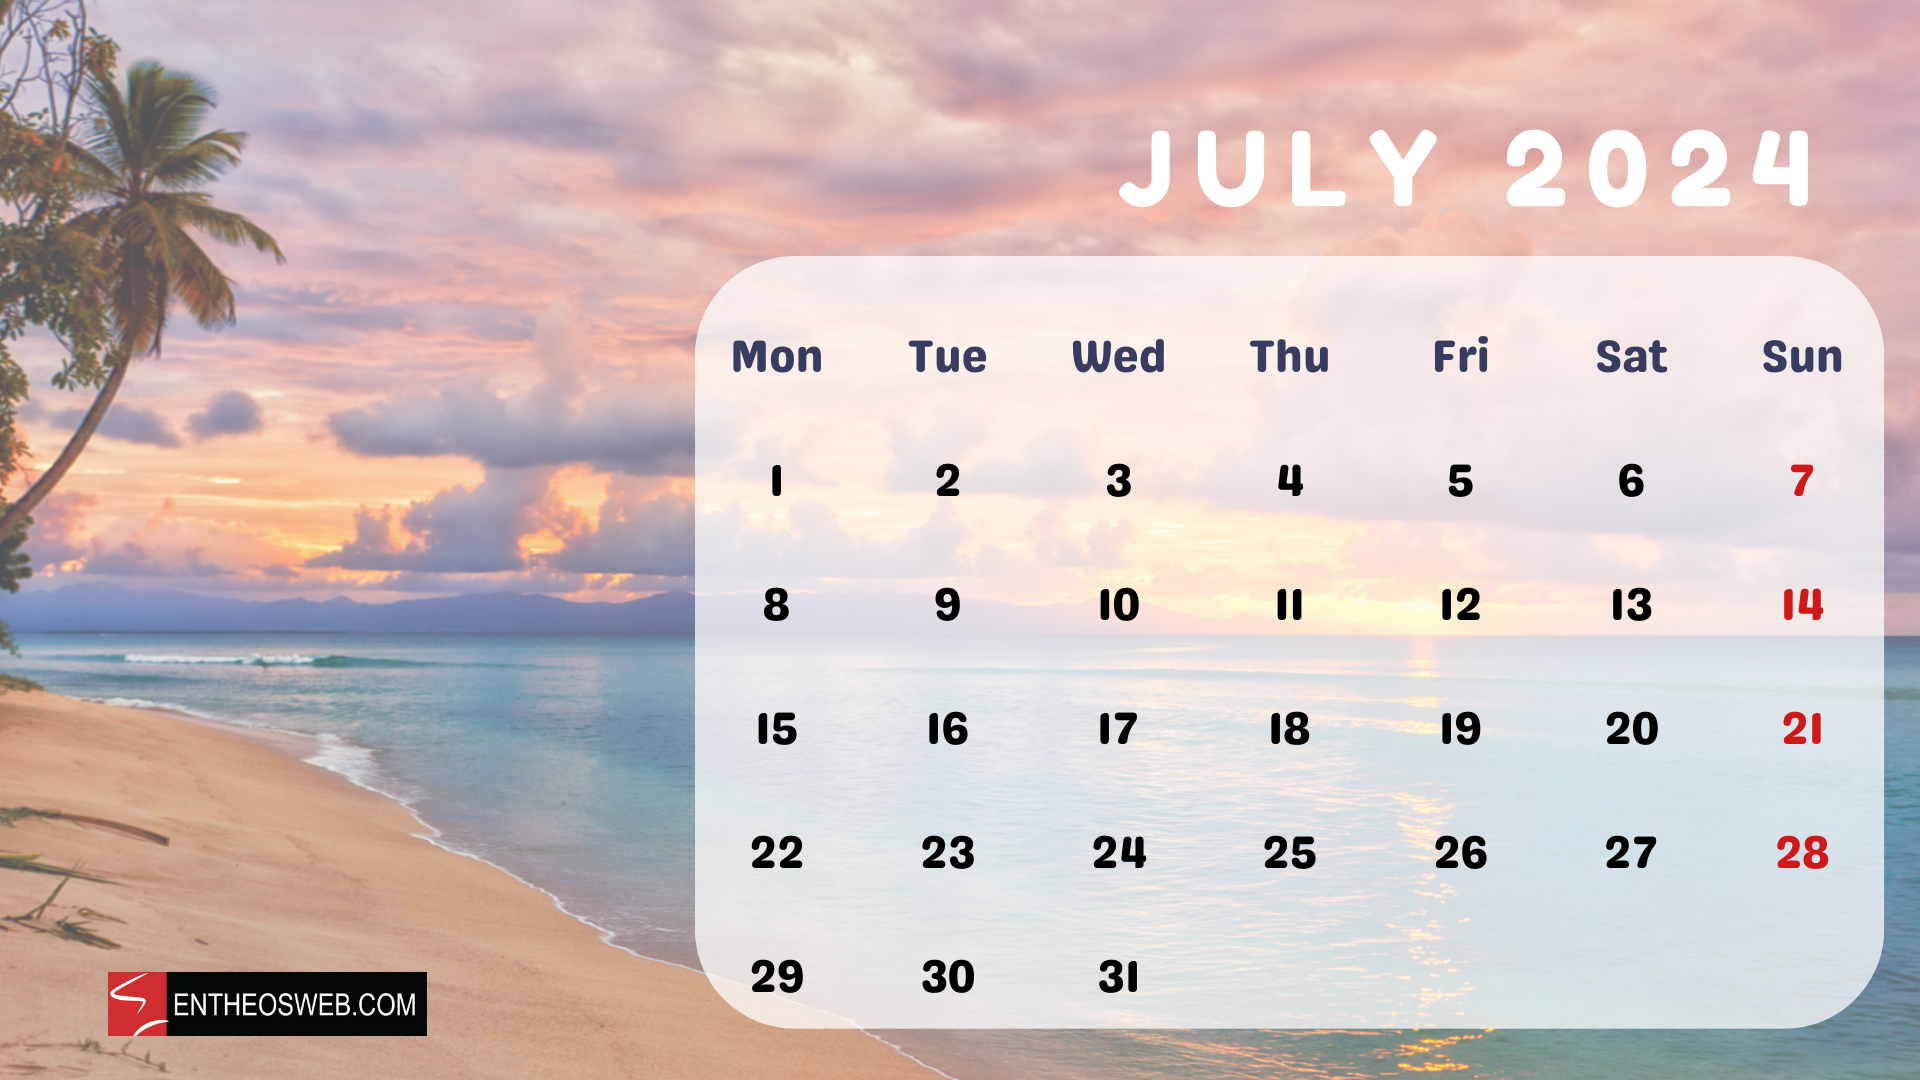 July 2024 Desktop Wallpaper Calendar | Entheosweb | Calendar Wallpaper July 2024